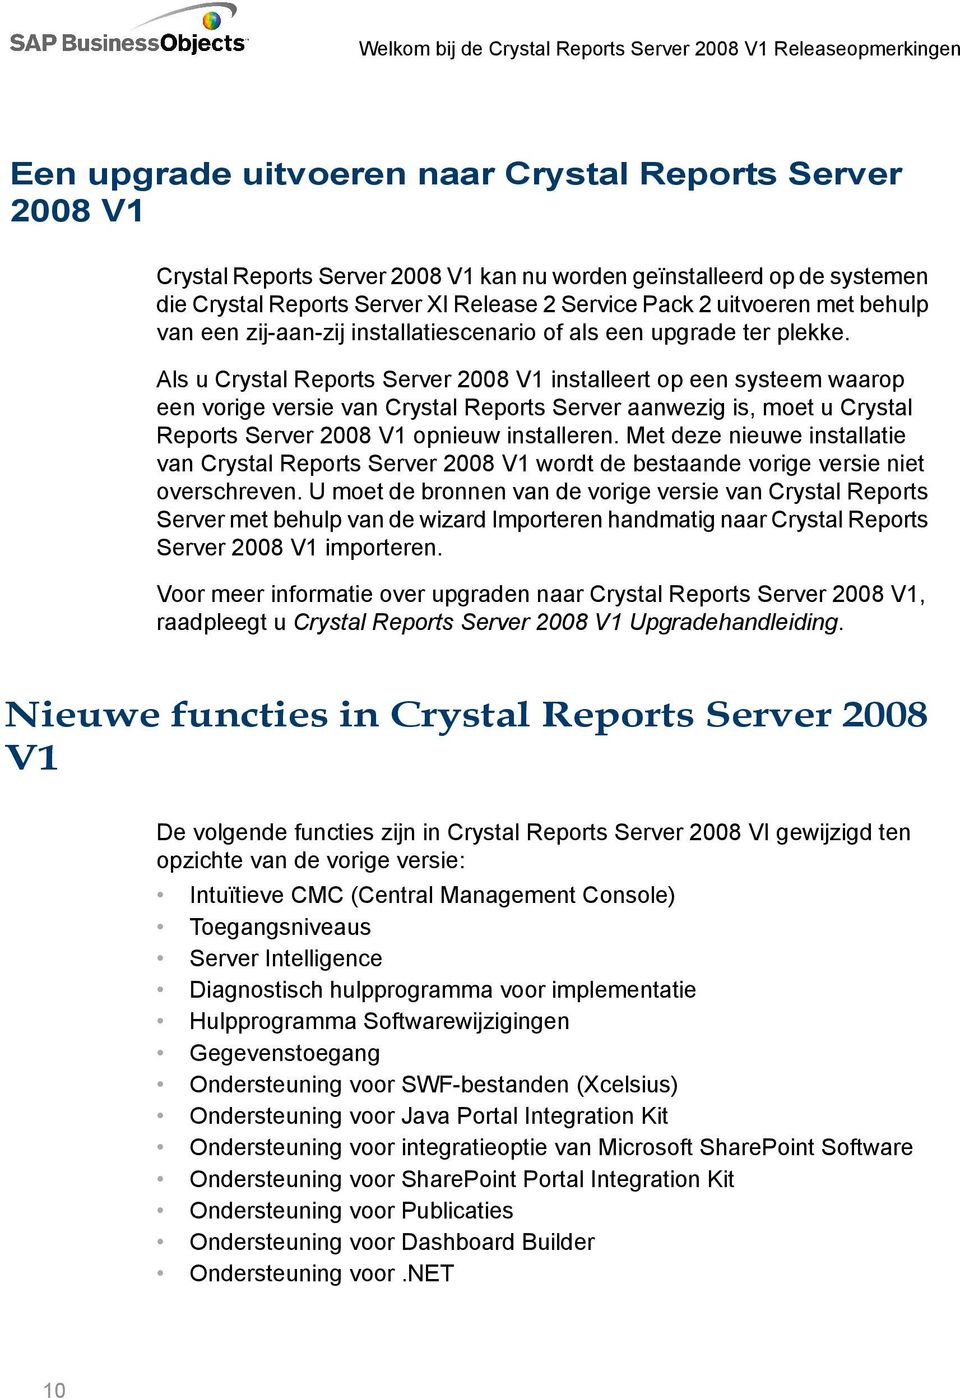 Als u Crystal Reports Server 2008 V1 installeert op een systeem waarop een vorige versie van Crystal Reports Server aanwezig is, moet u Crystal Reports Server 2008 V1 opnieuw installeren.